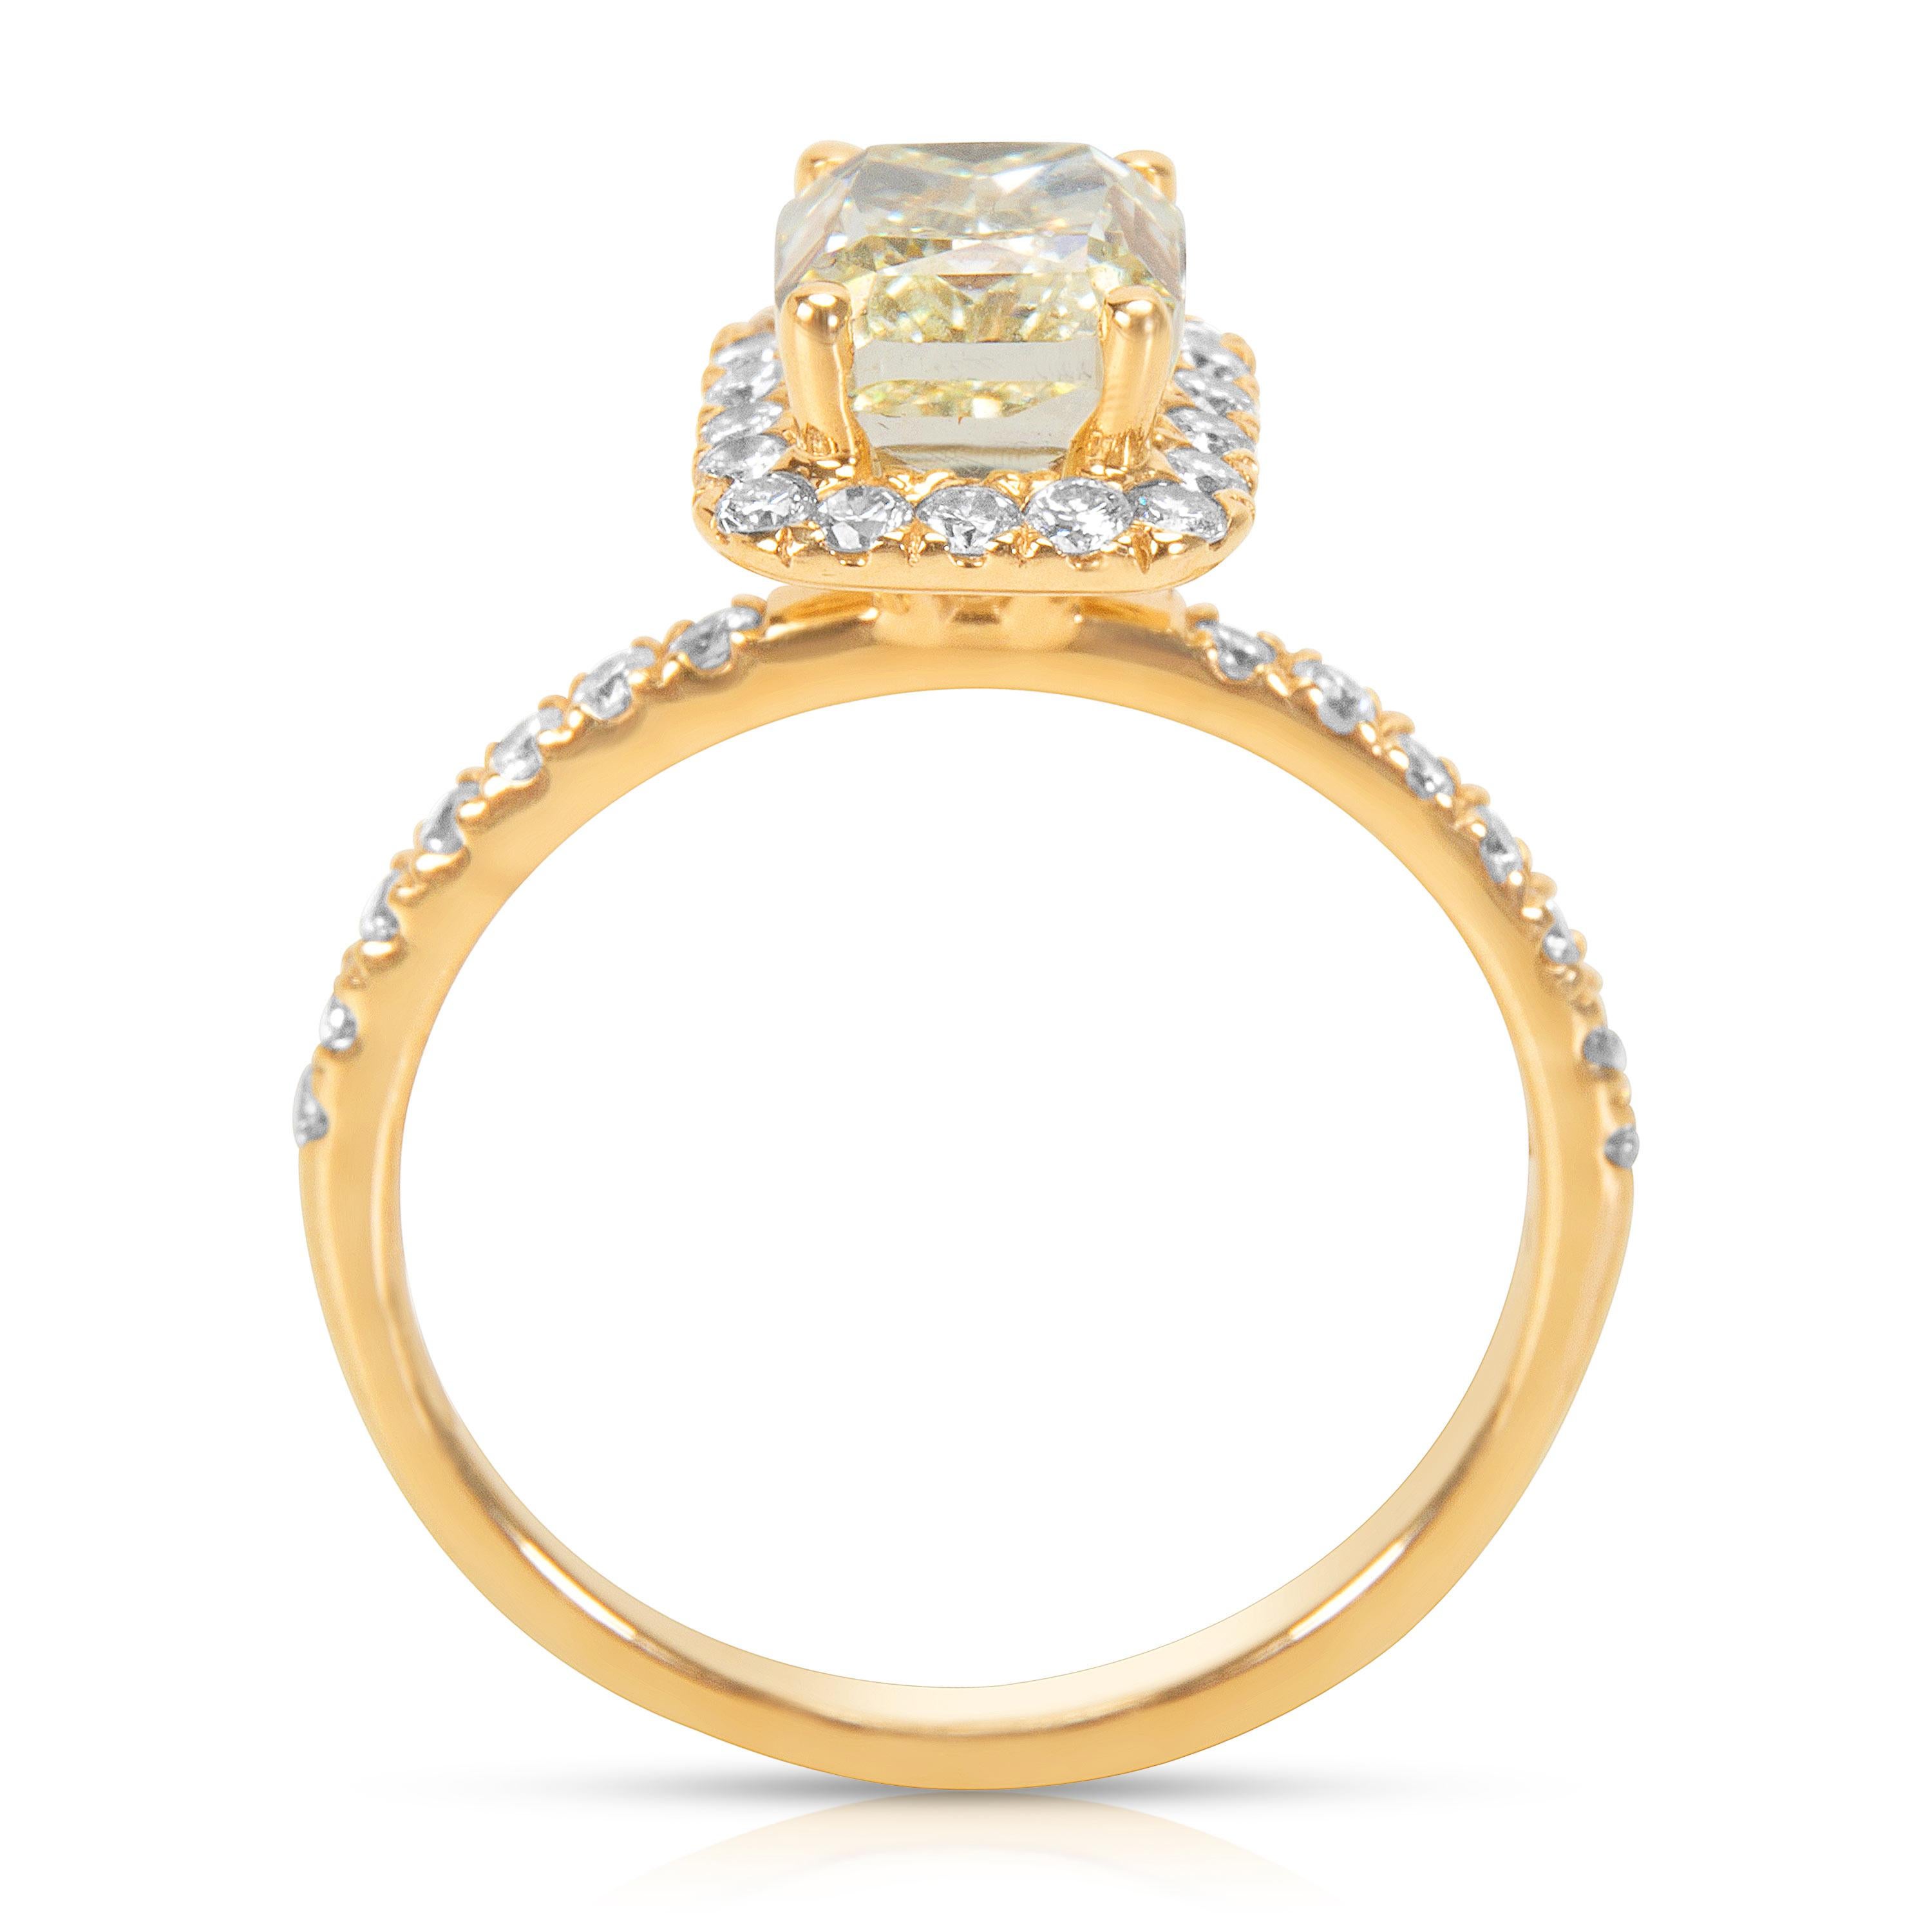 Round Cut Yellow Diamond Halo Engagement Ring in 14 Karat Yellow Gold 2.55 Carat